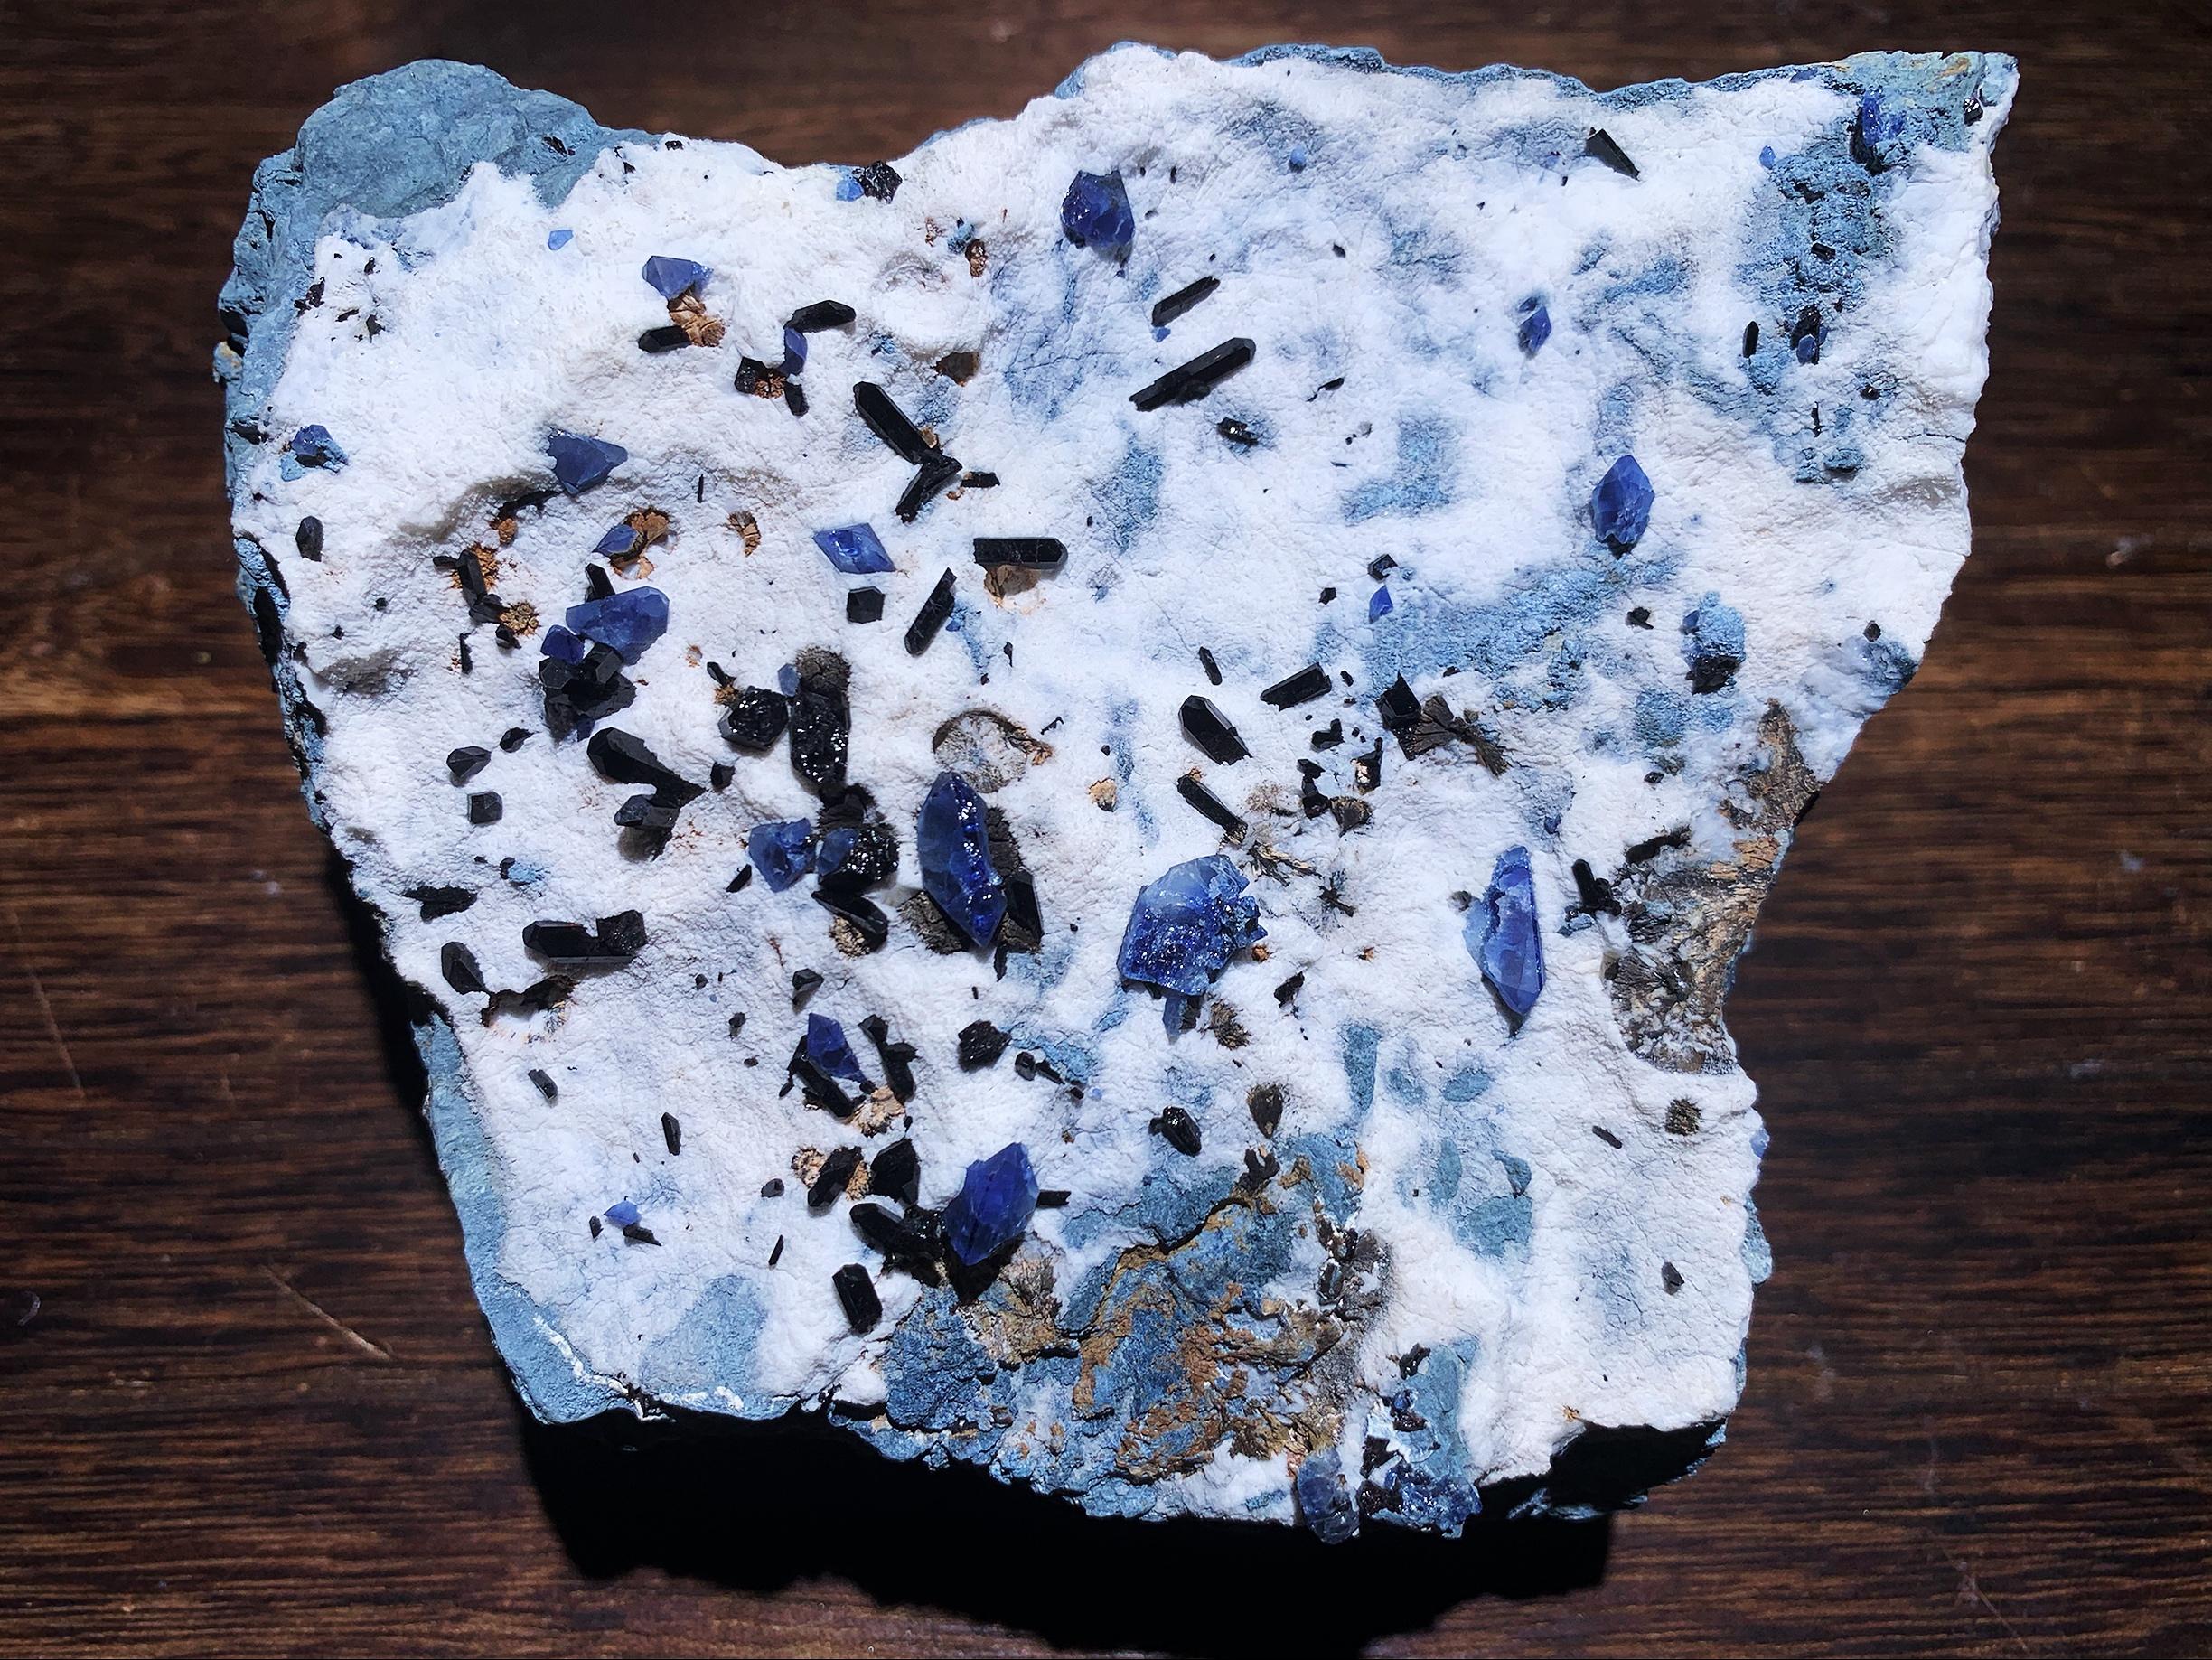 该矿物具体的化学成分不清,一般称为铝硼锆钙石或红硅硼铝钙石矿